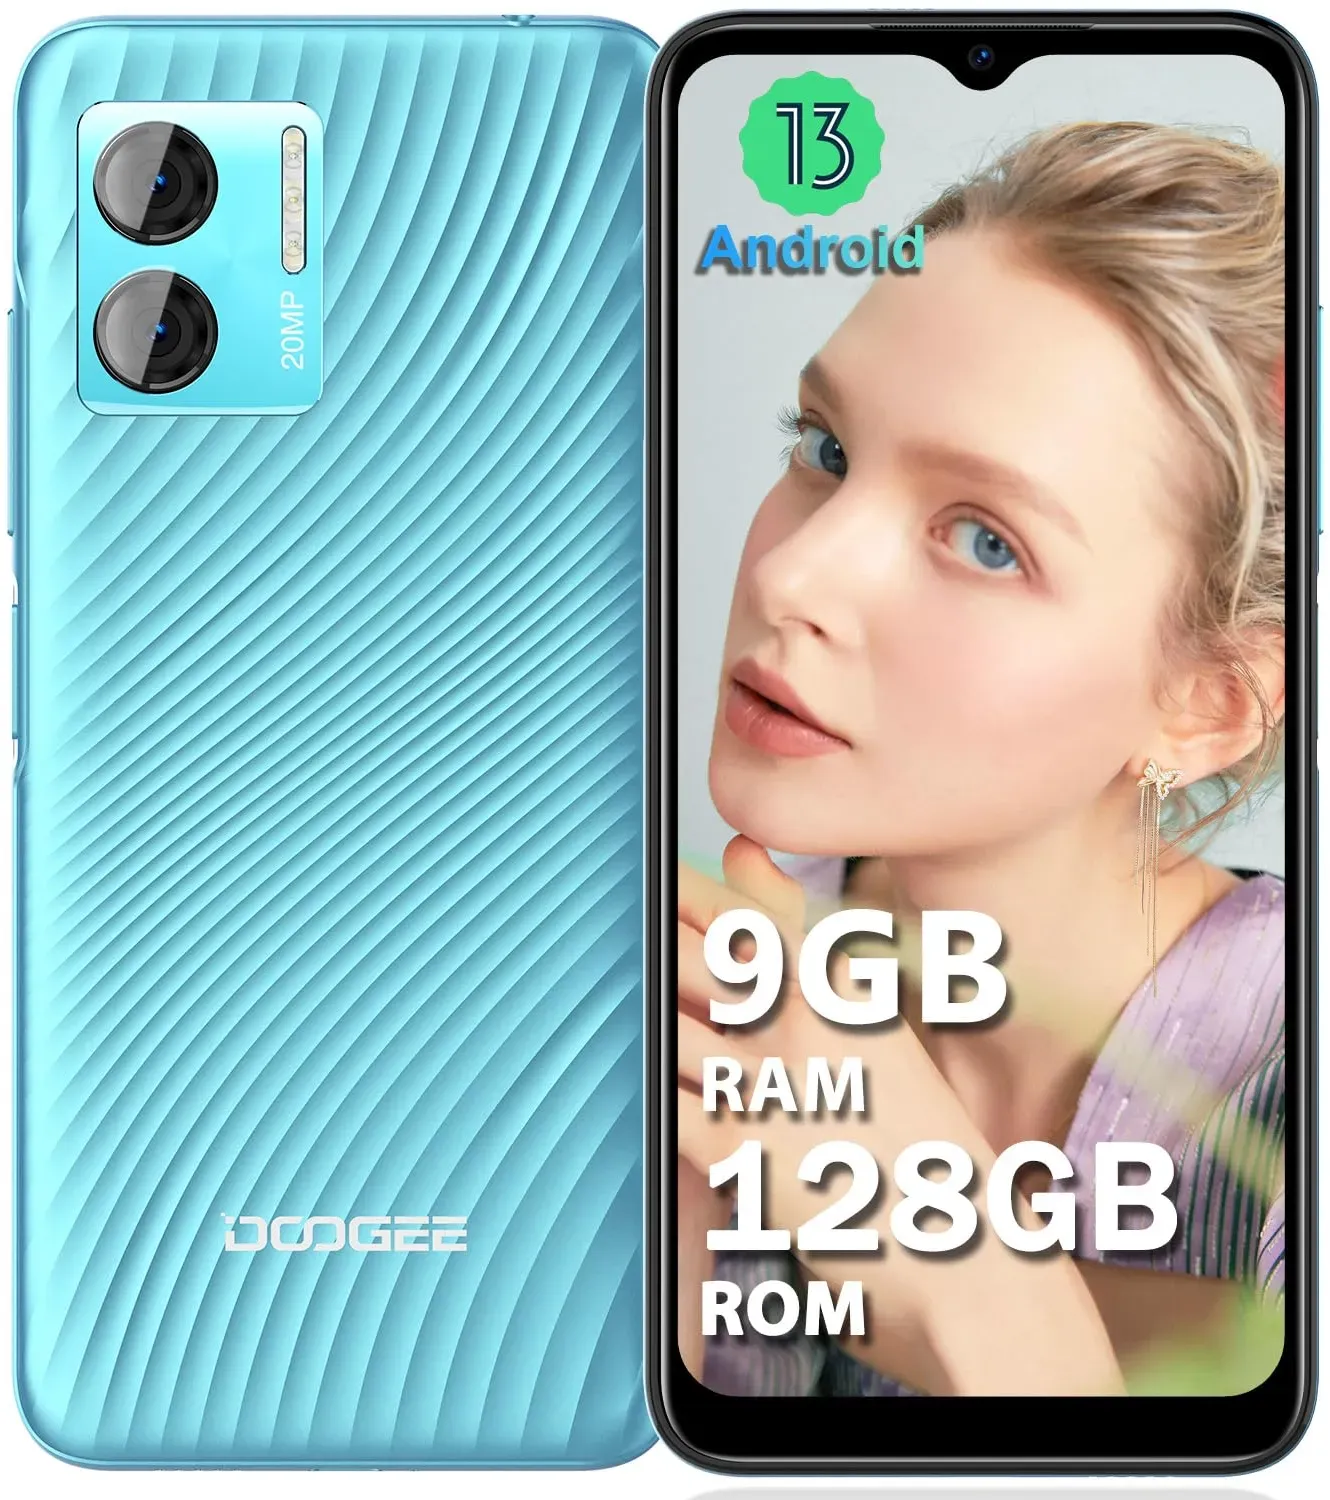 DOOGEE N50S (9GB+128GB) Smartphone Ohne Vertrag, 6.52" HD+ Display Handy Ohne Vertrag Android 13, 20MP+8MP Kamera, 4200mAh, Handy Günstig 4G Dual SIM, Simlockfreie Handys 5G Wi-Fi, BT5.0, OTG, Face ID